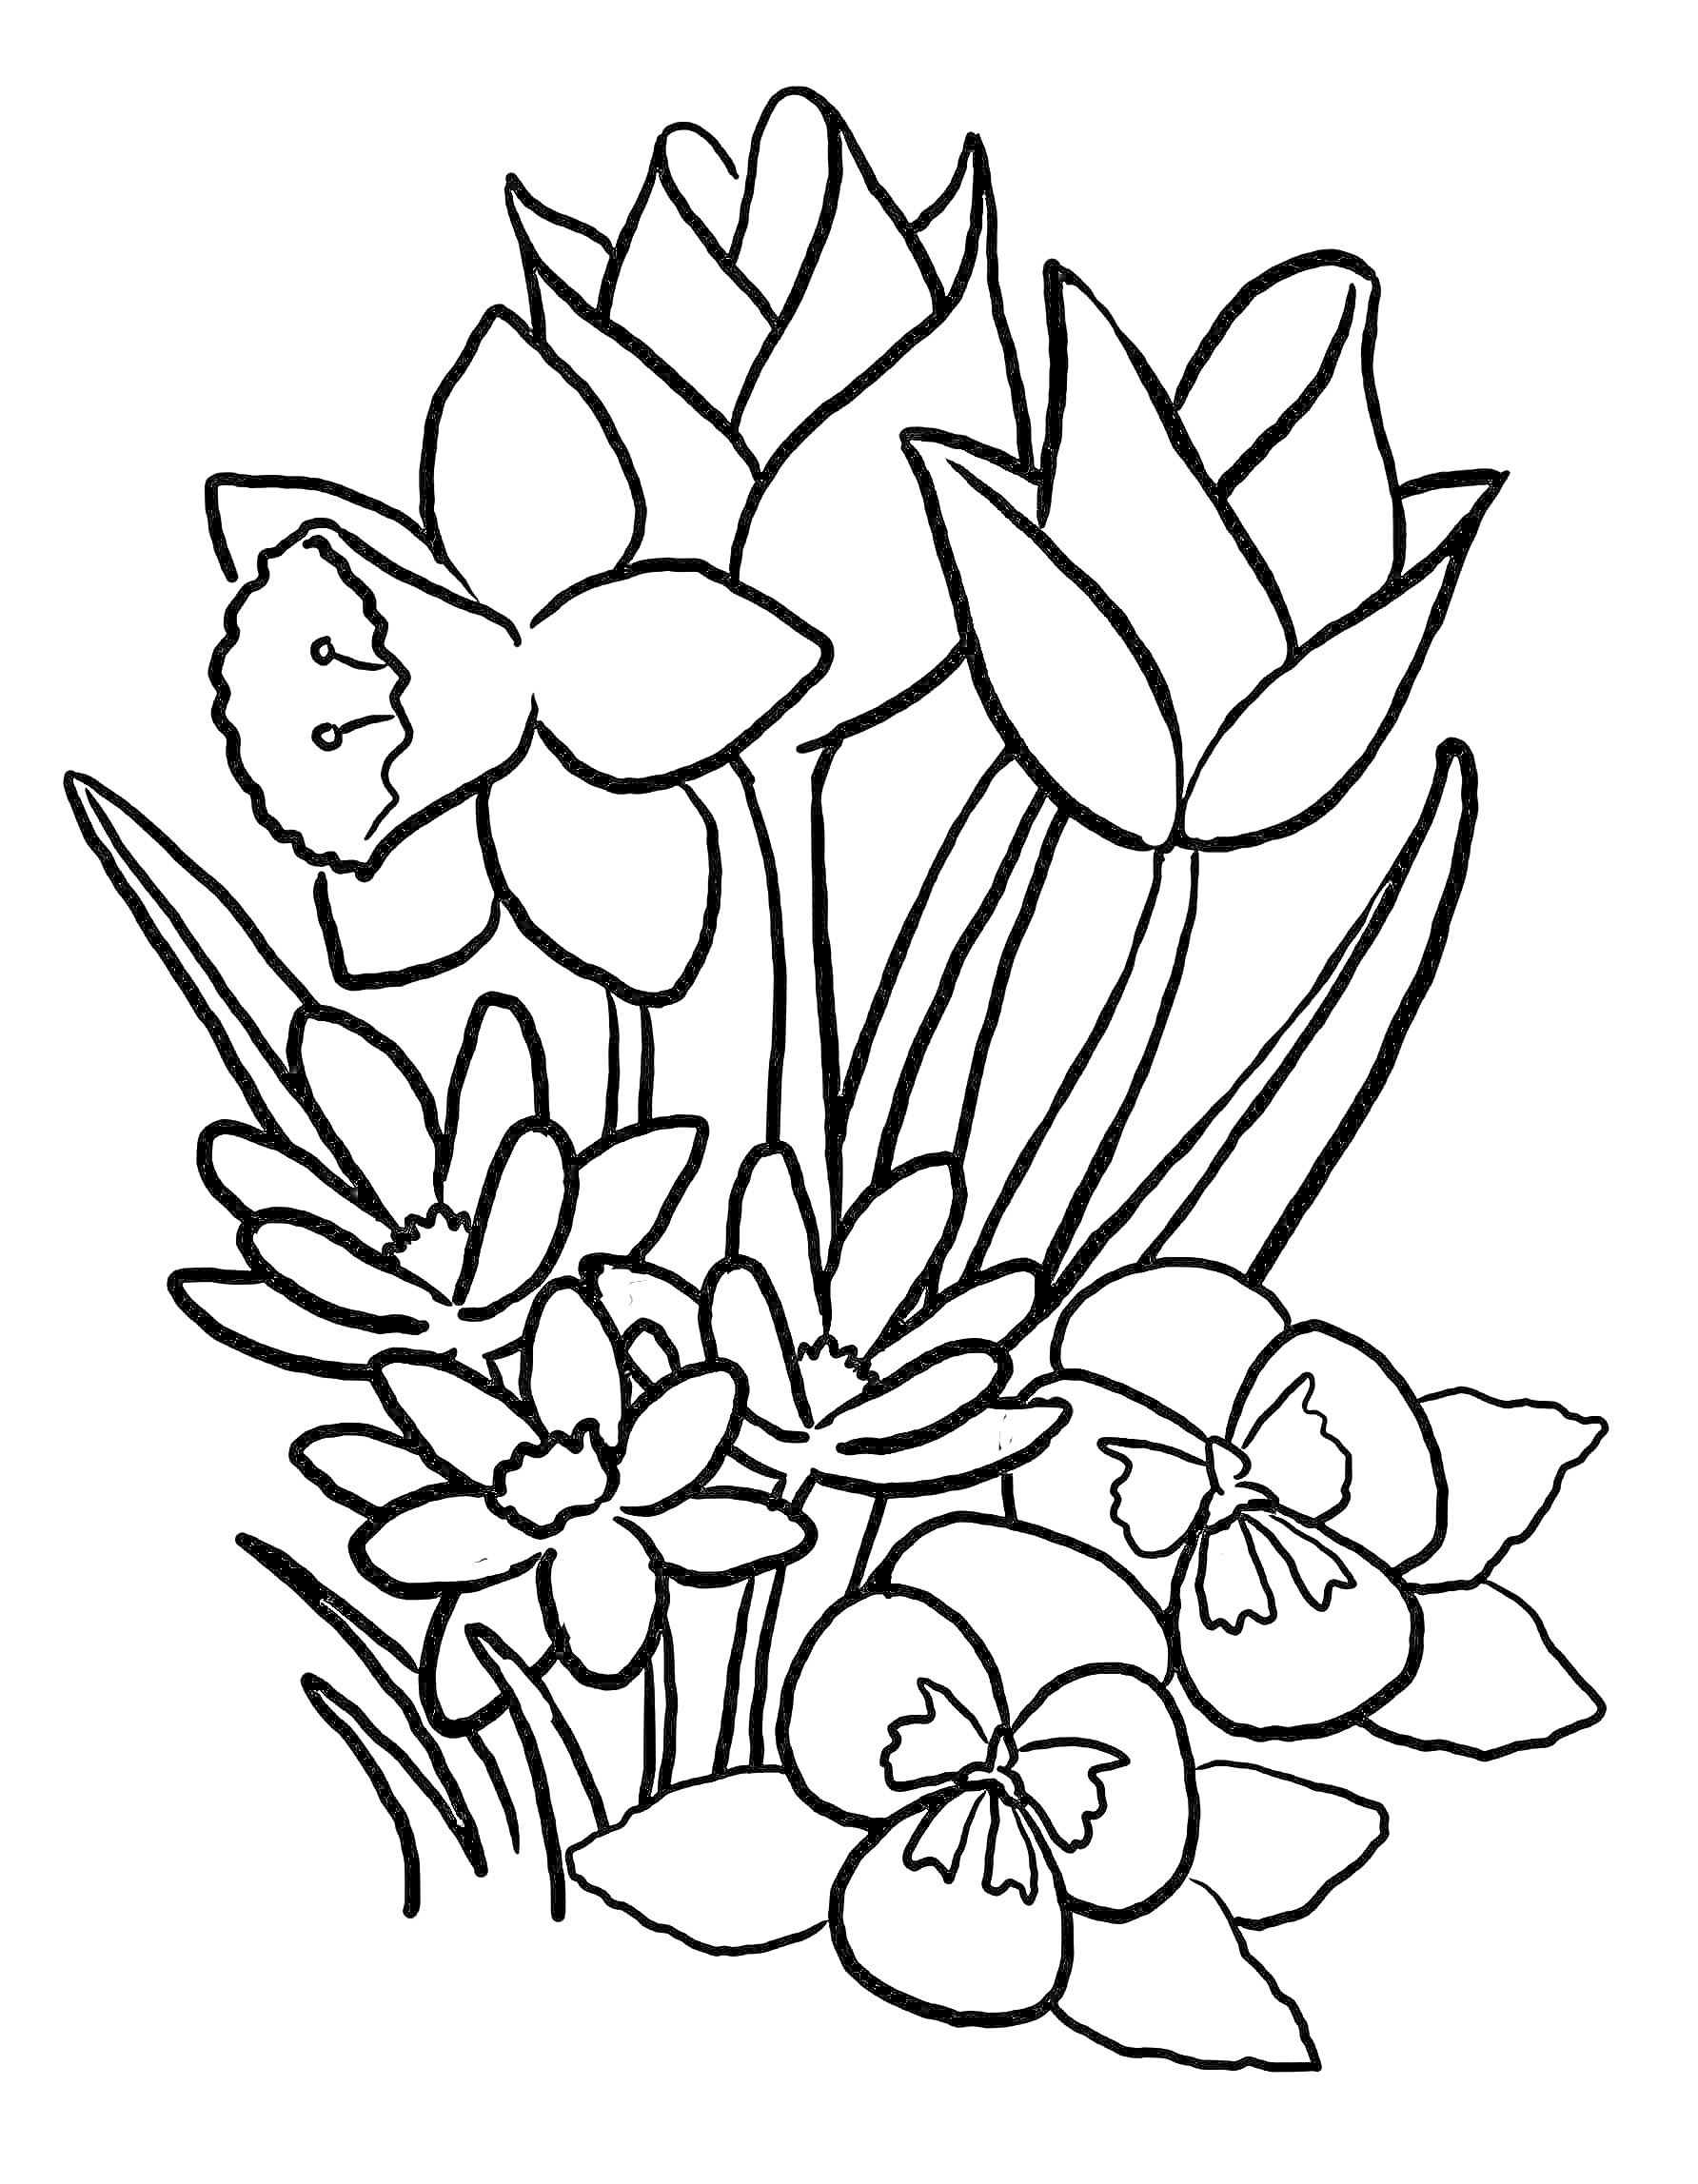 Раскраска Нарисованные весенние цветы, такие как нарциссы, тюльпаны, крокусы и фиалки